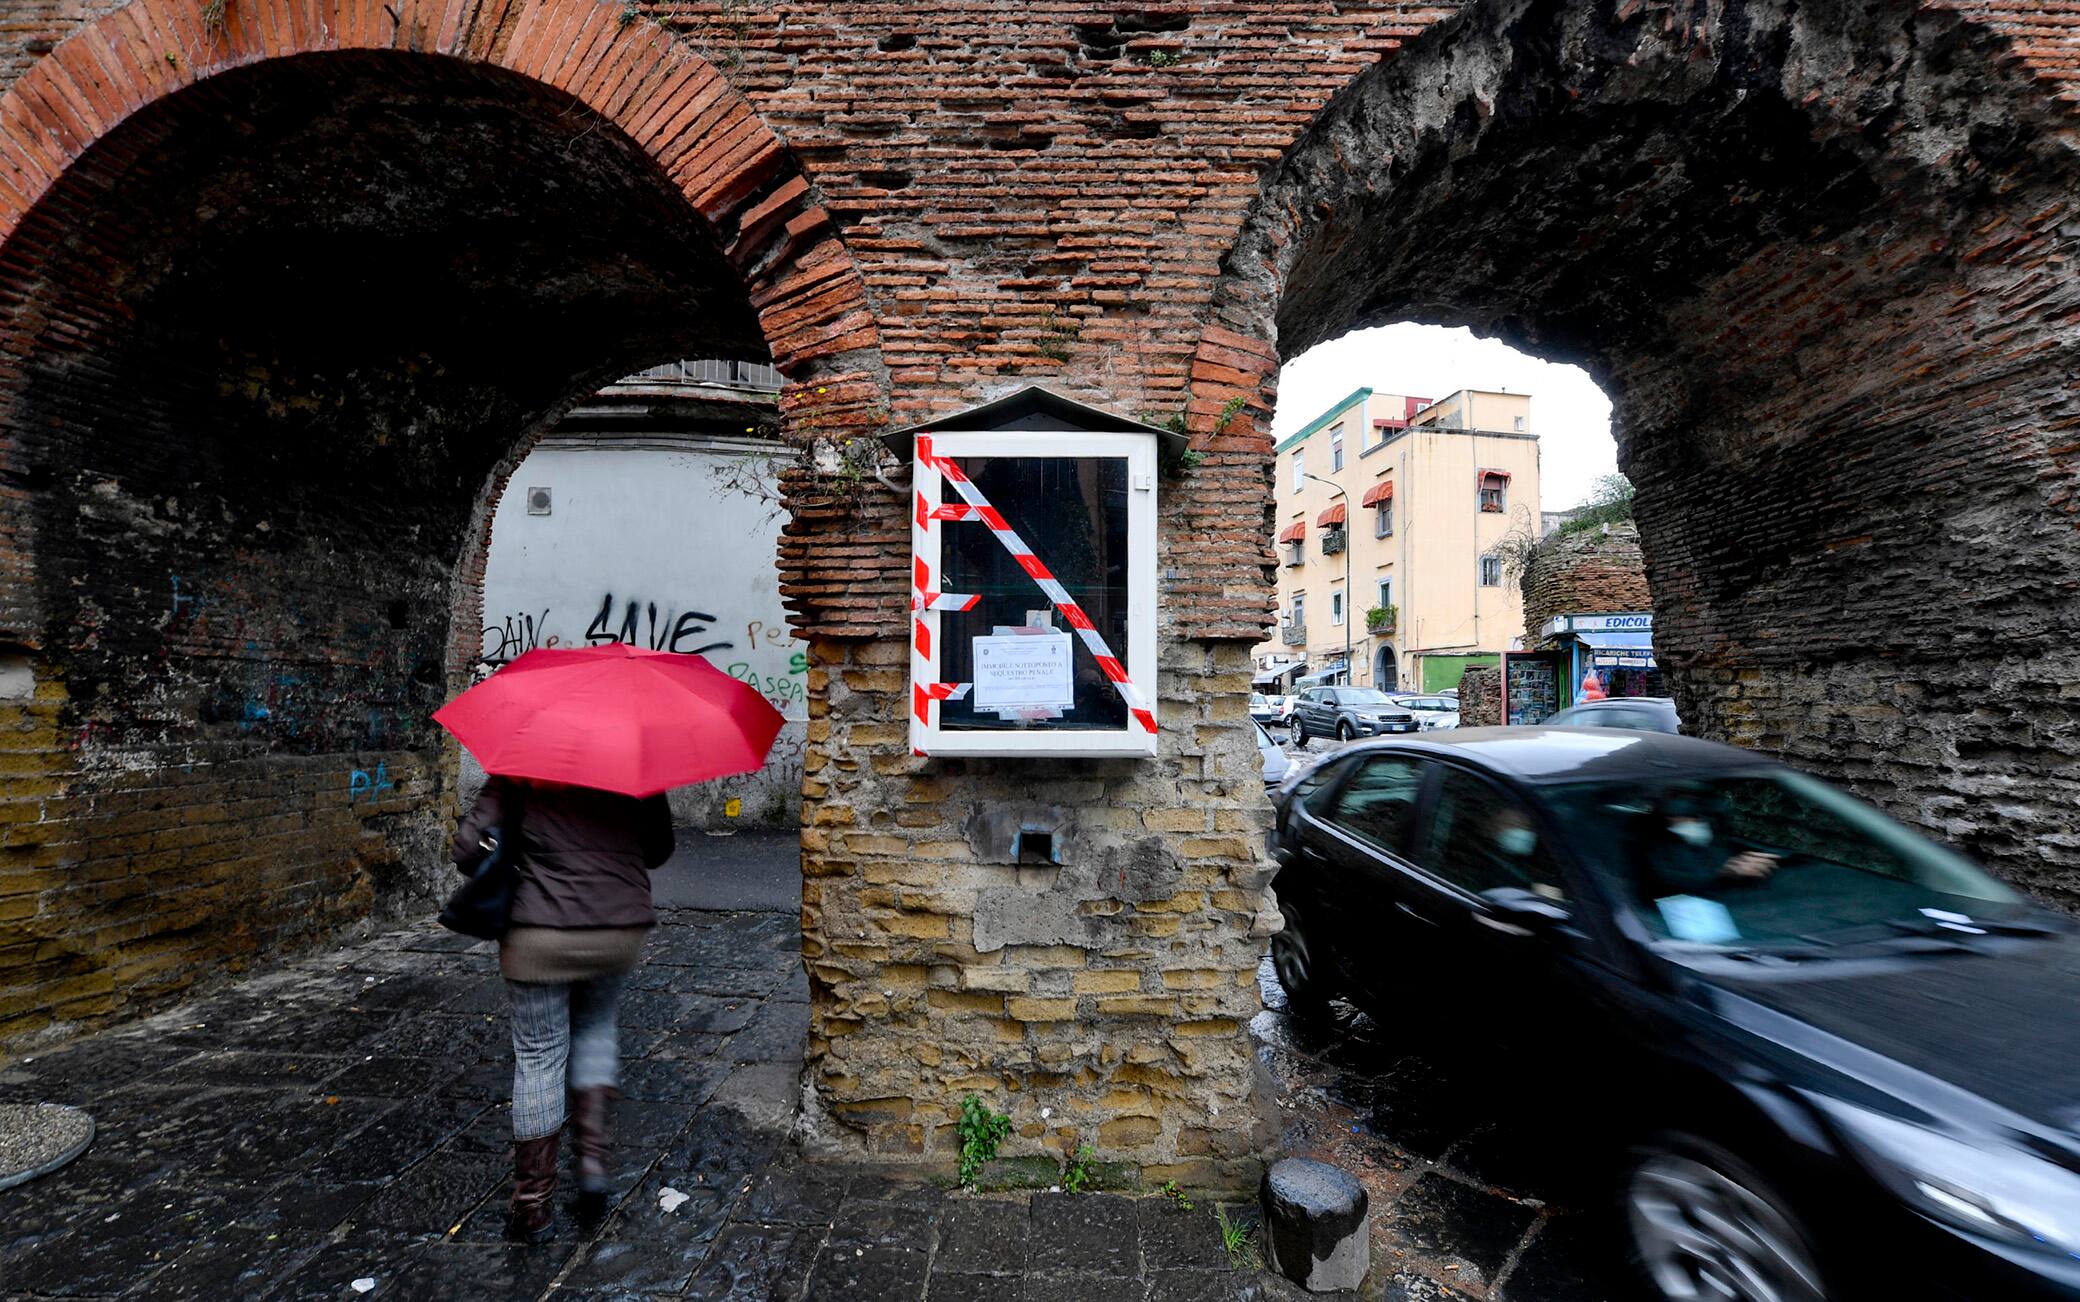 L'edicola votiva abusiva posta su una colonna portante dei resti del tratto dell'acquedotto romano dei "Ponti Rossi" sequestrata dagli agenti  della Polizia Municipale di Napoli, 21 febbraio 2022. ANSA / CIRO FUSCO